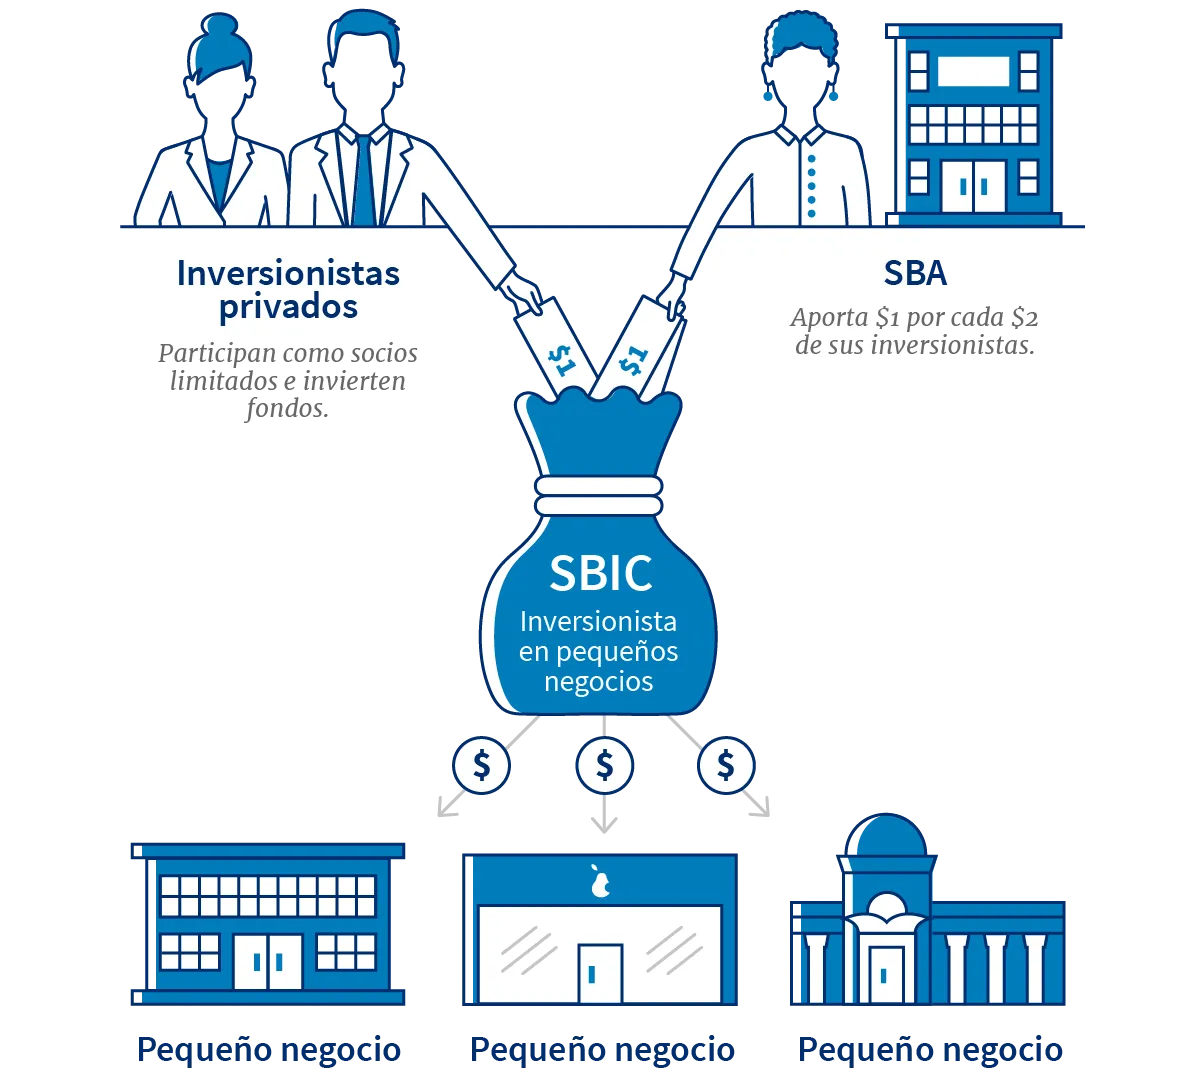 El proceso de inversión privada en Compañia de inversión en pequeñas empresas. La SBA iguala fondos al doble y la compañía de inversión las distribuye como inversiones a pequeños negocios. 